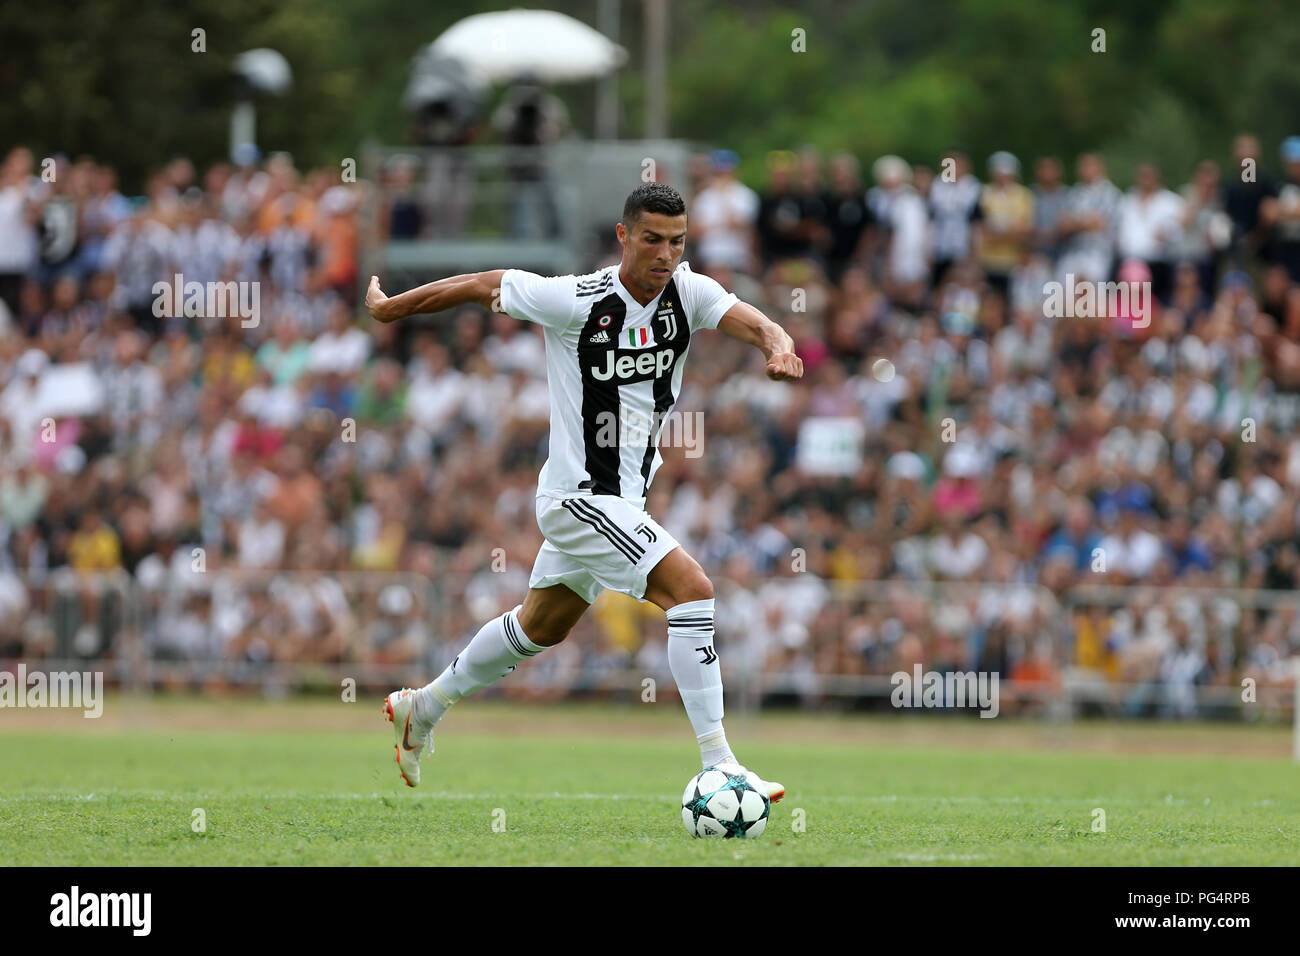 Cristiano Ronaldo de la Juventus en action lors de la pré-saison match amical entre la Juventus et la Juventus, U19. Banque D'Images